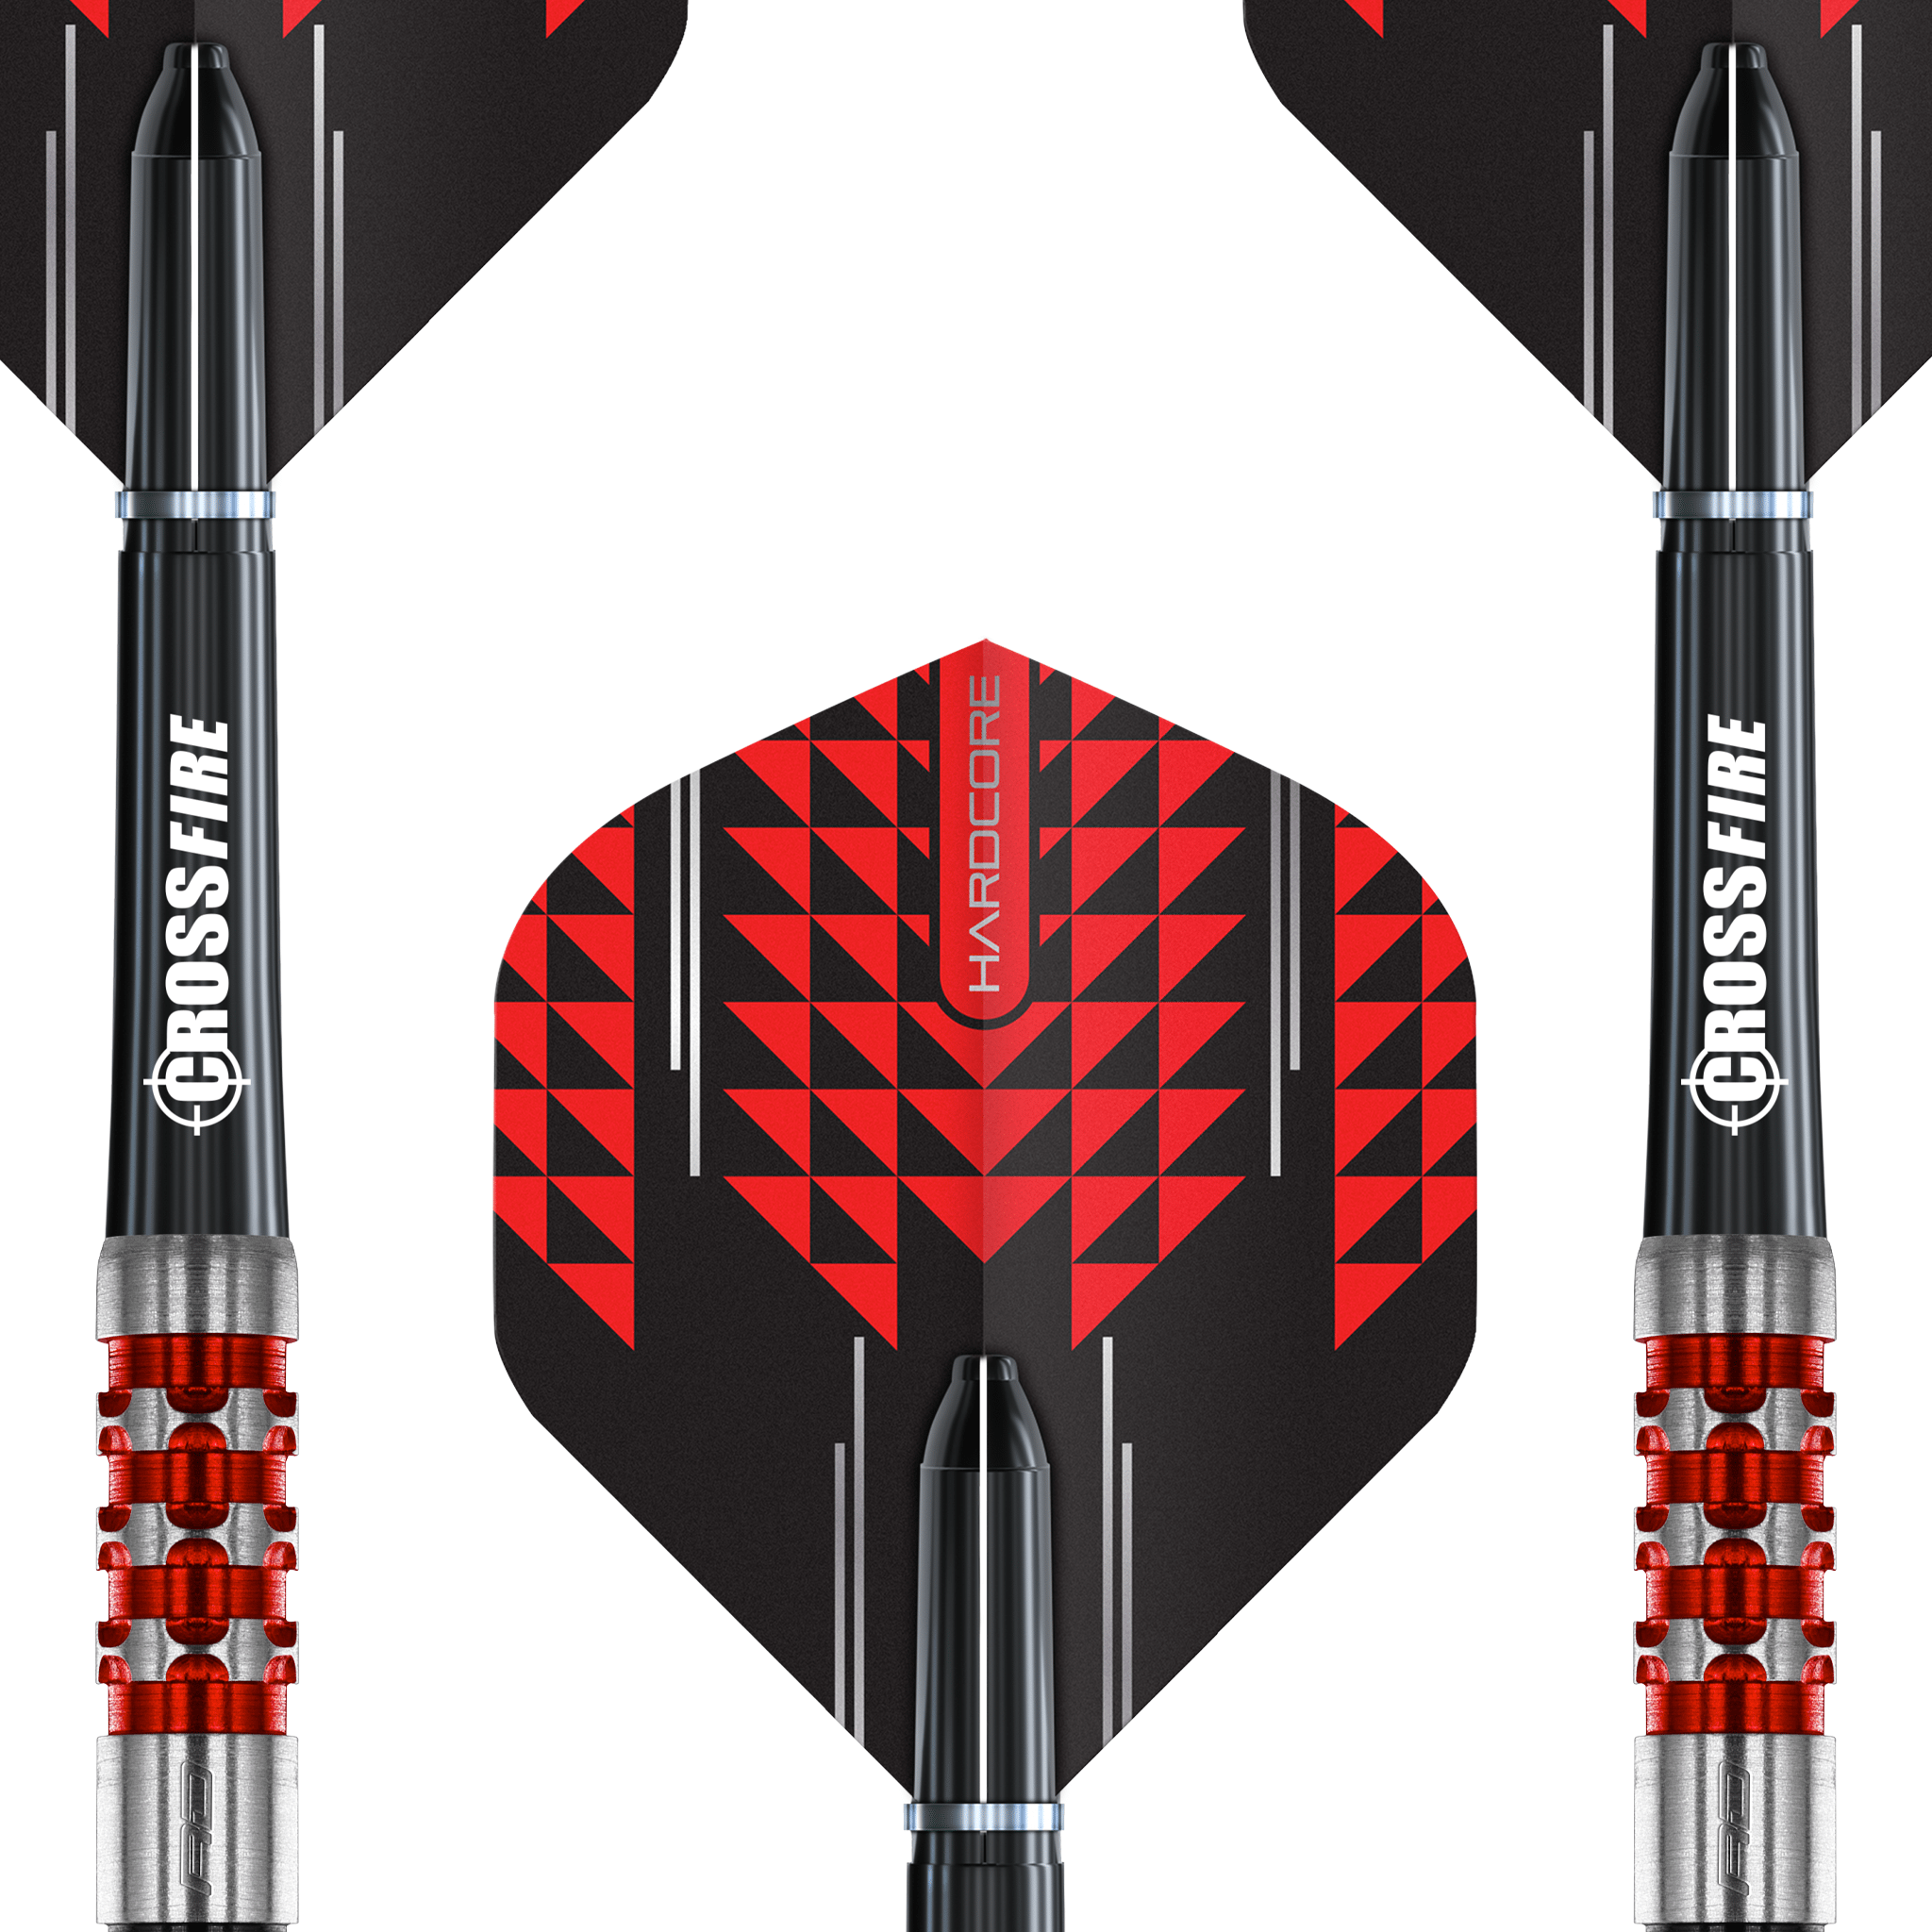 Red Dragon Crossfire - 90% Tungsten Steel Tip Darts Darts